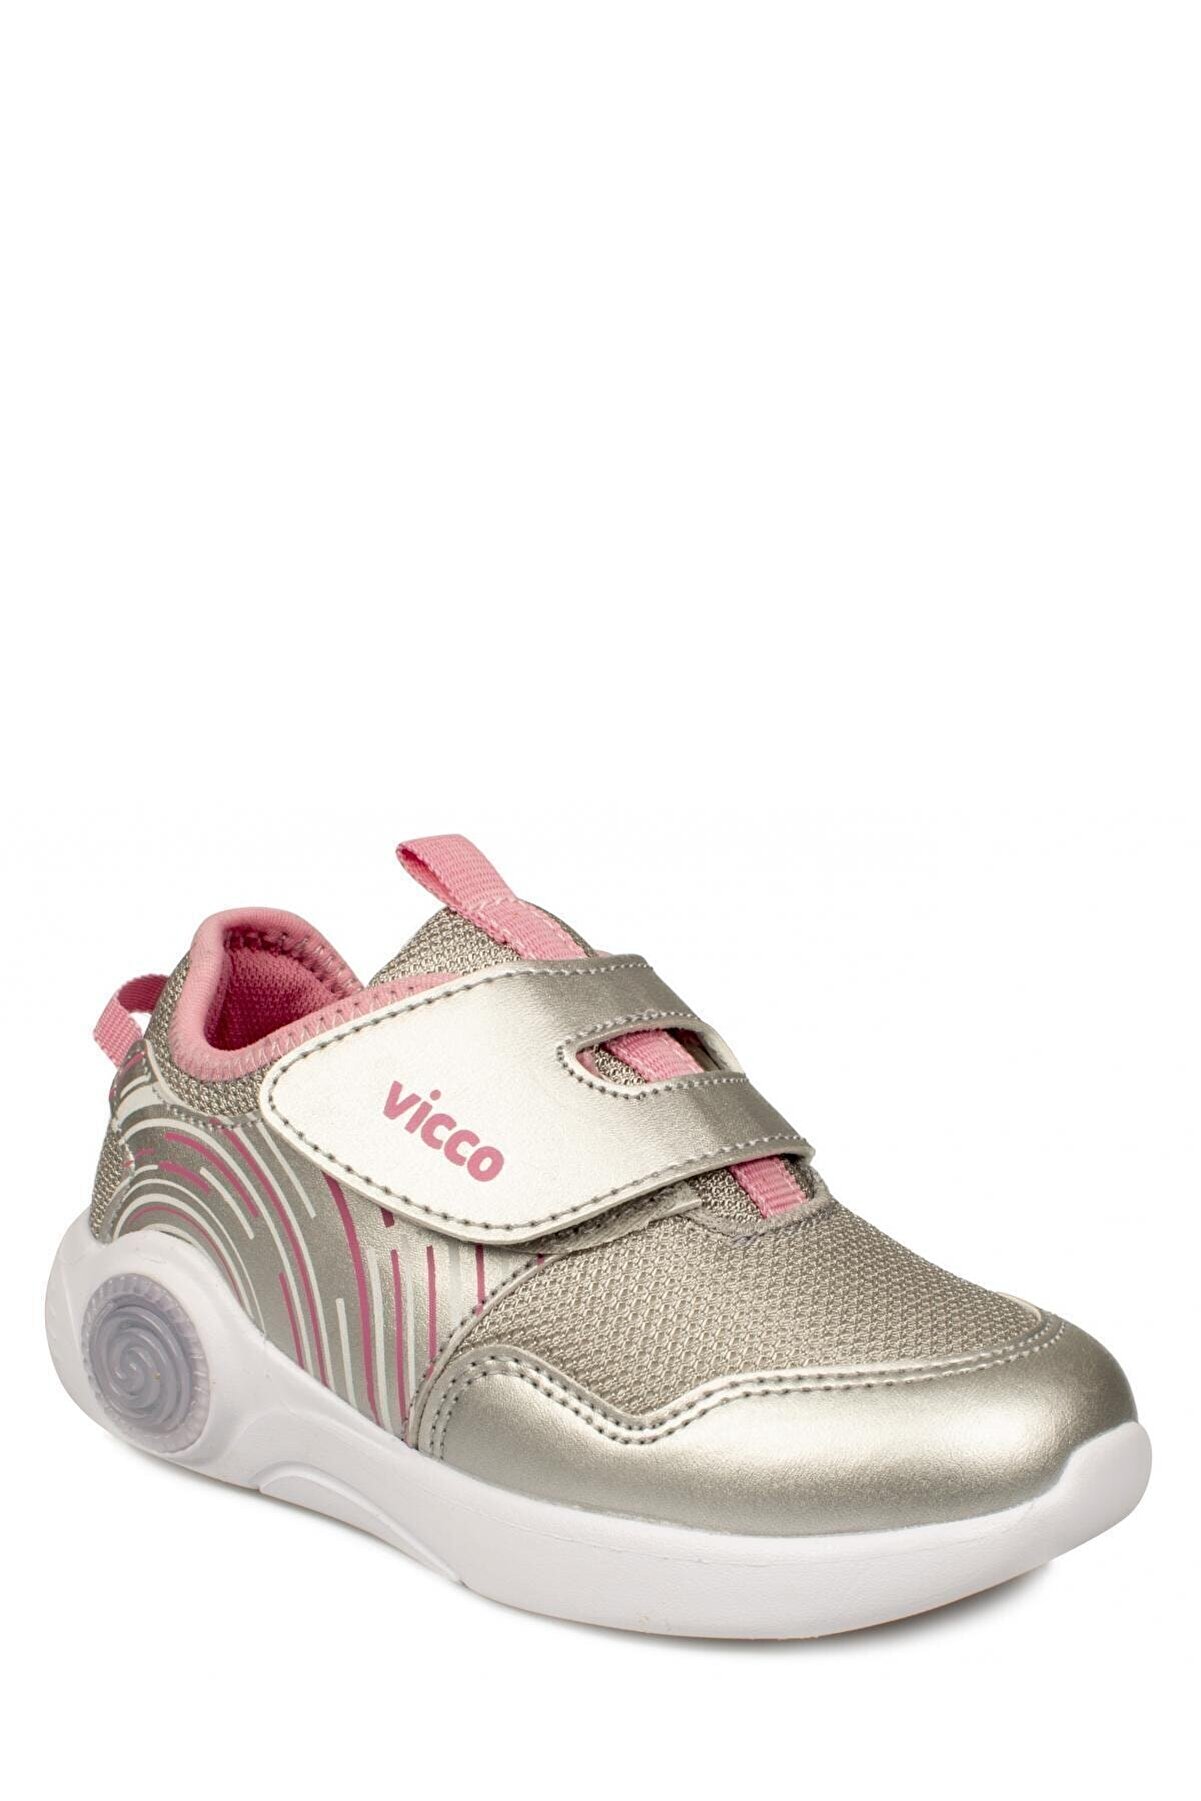 Vicco Kız  Çocuk 346.b20y.213 Gümüş Anatomik (22-25) Işıklı Ayakkabı Sneaker